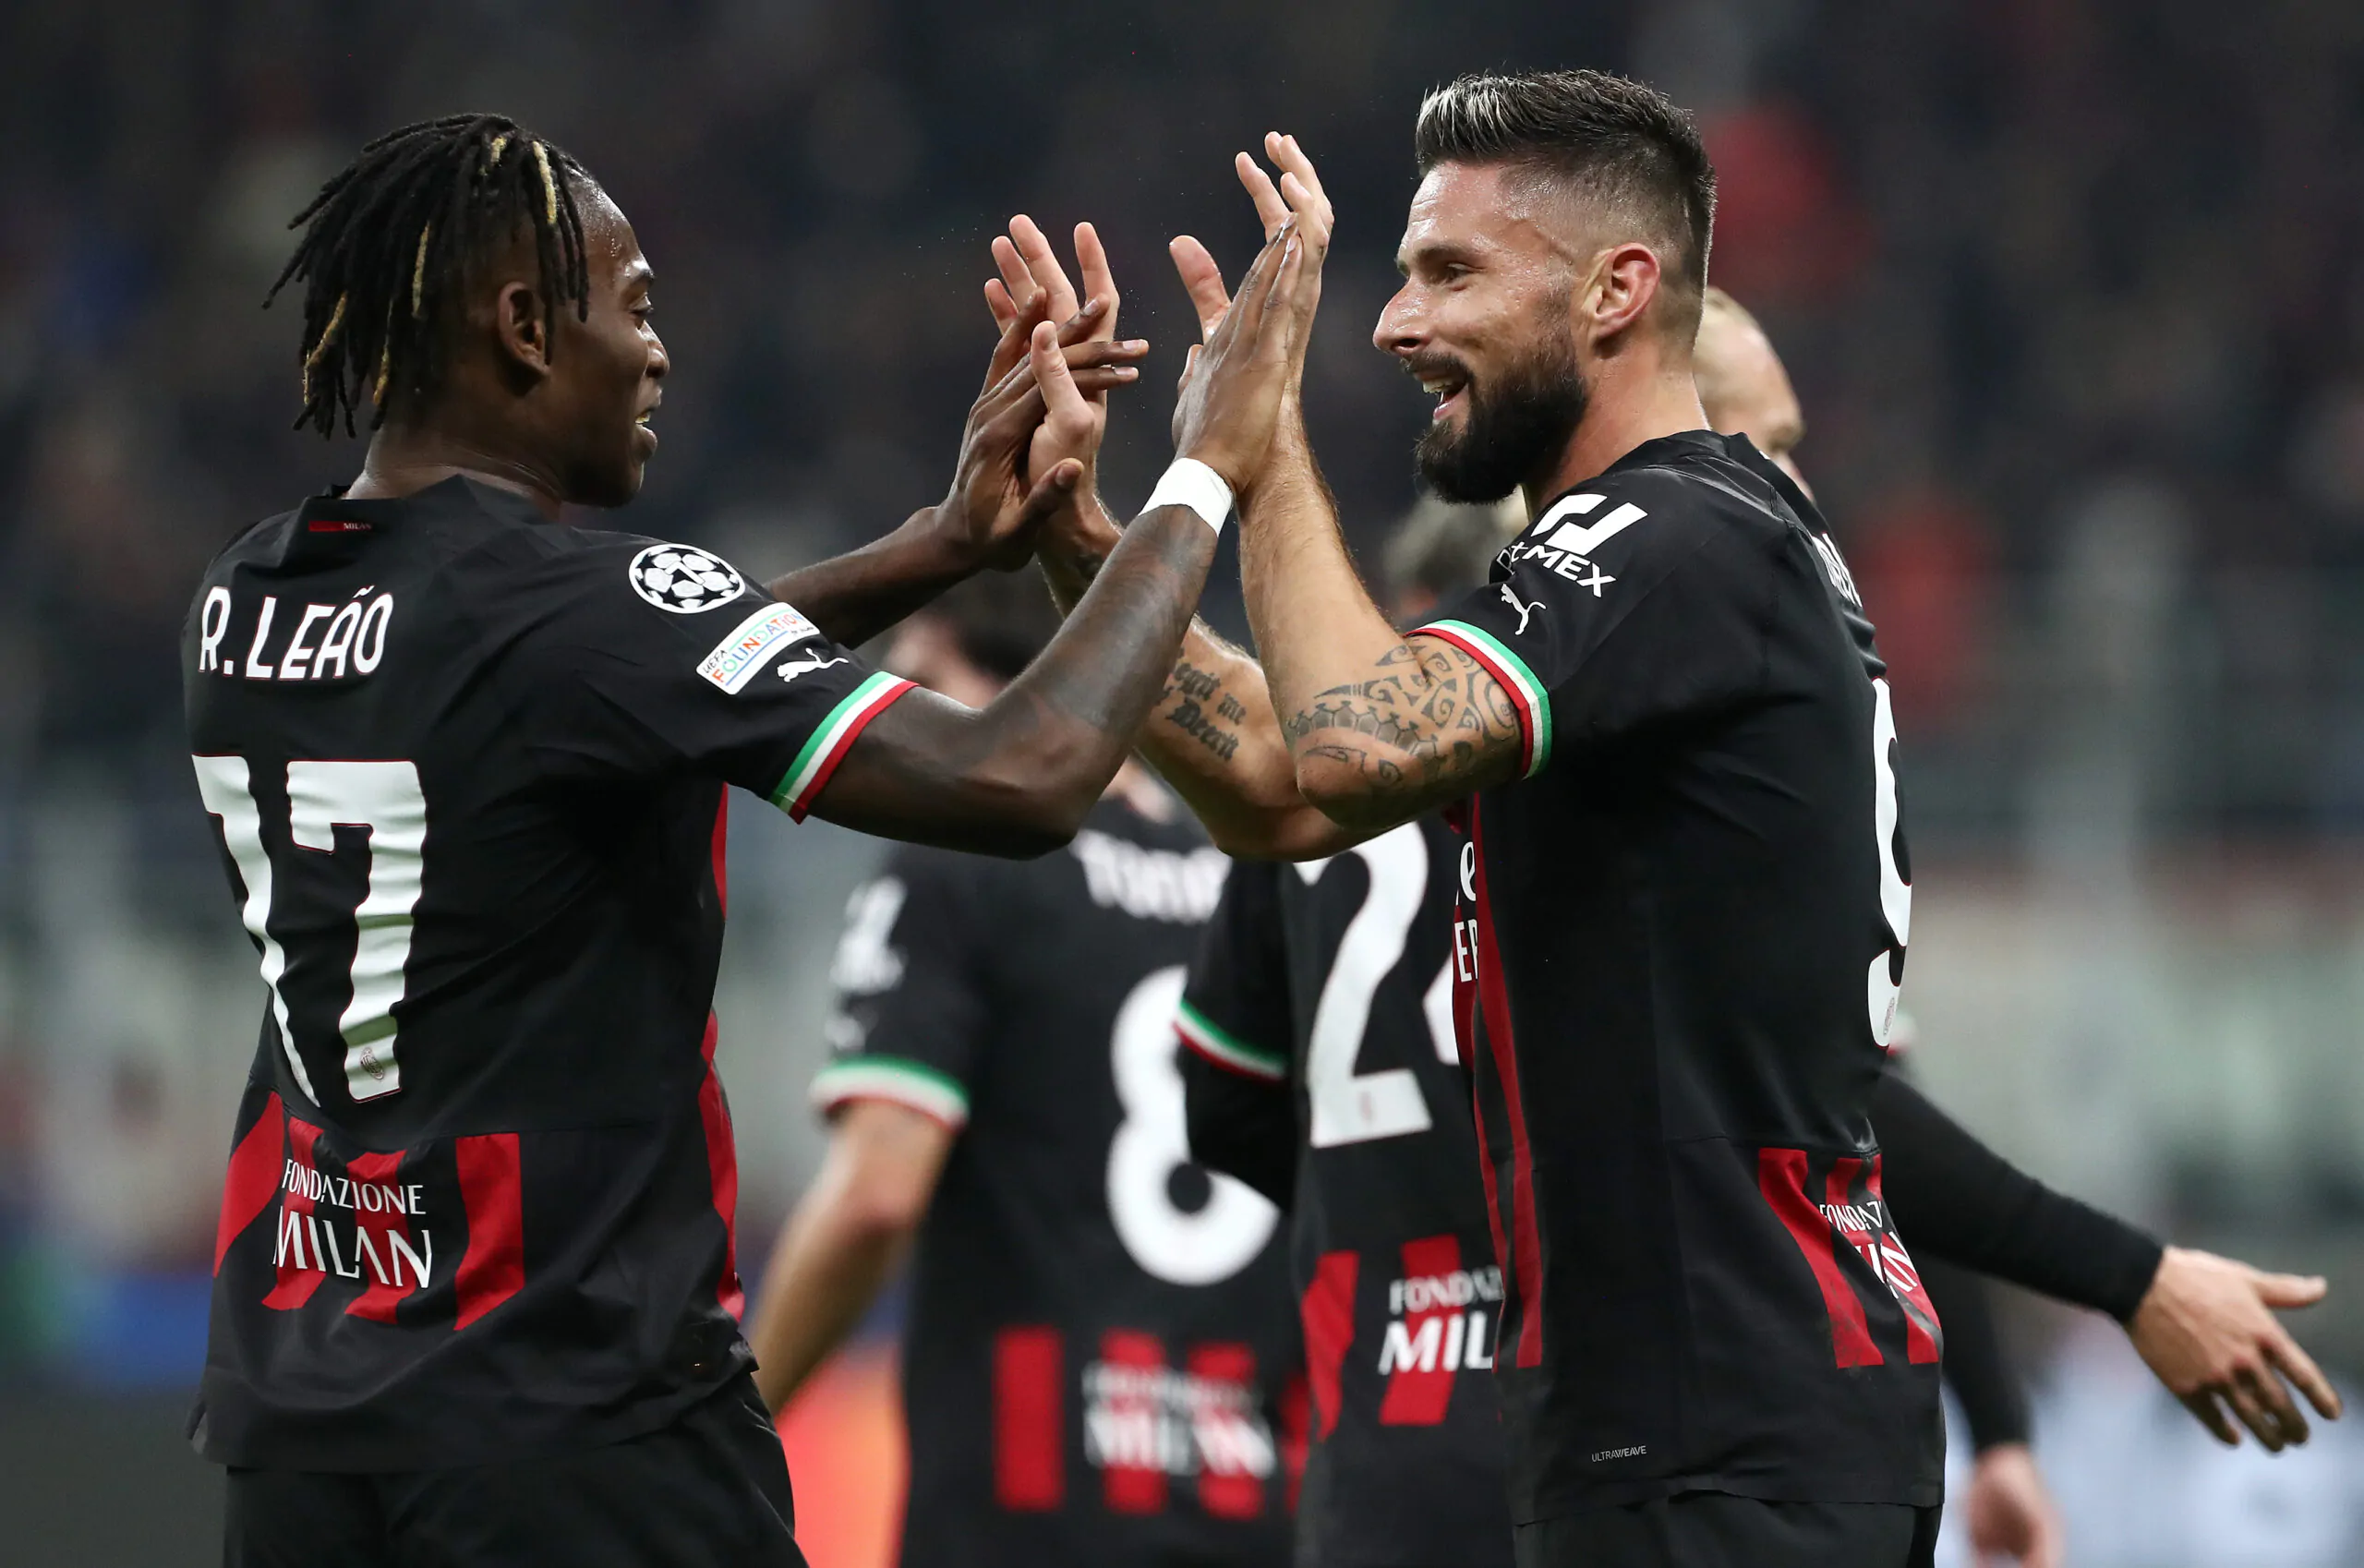 Calciomercato Milan, novità per rinnovi di Leao e Giroud: le ultime